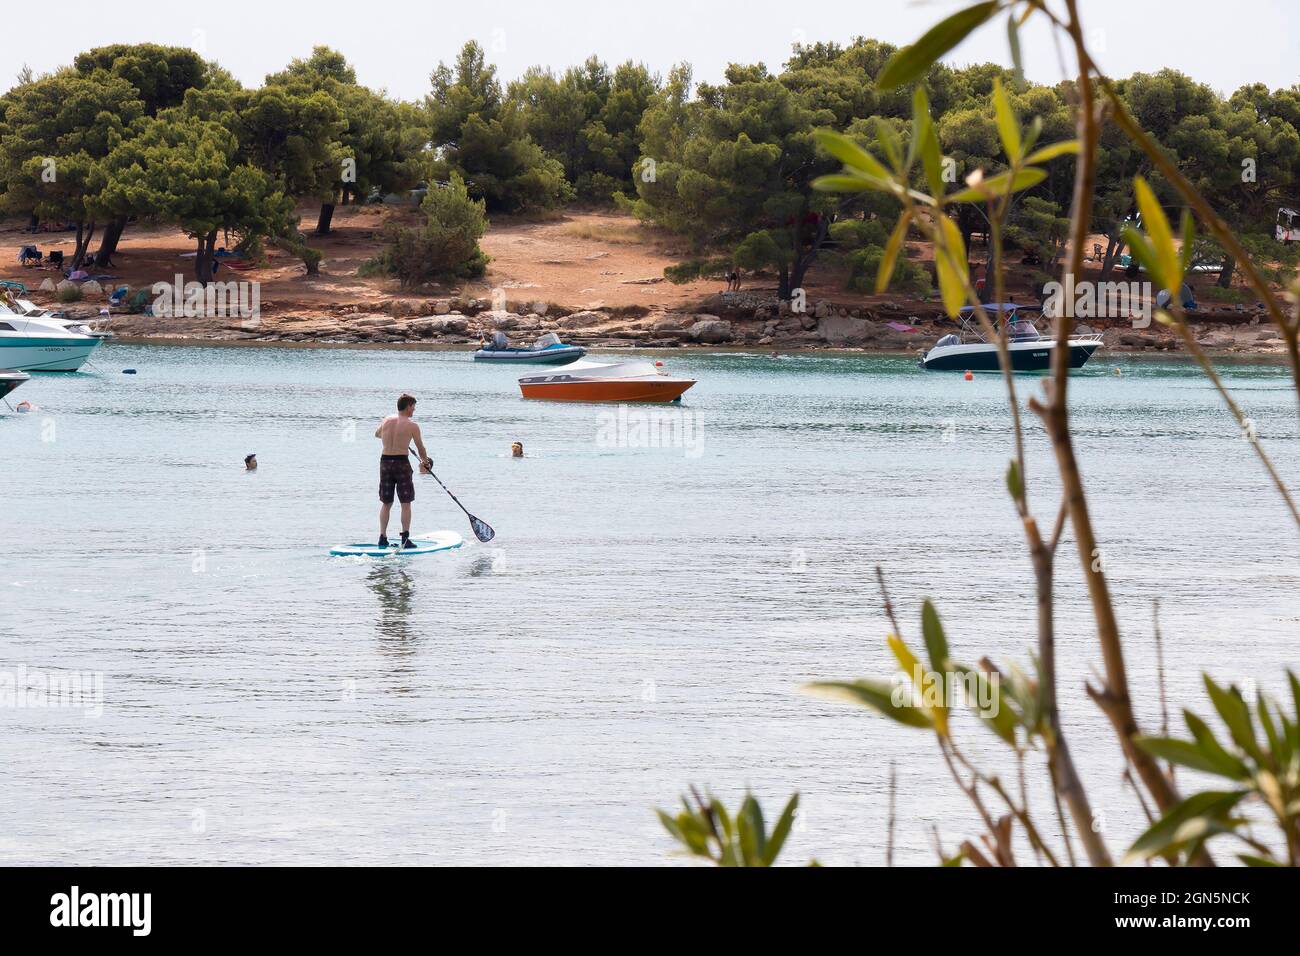 Kosirina, Murter, Croacia - 24 de agosto de 2021: Gente remando en tablas de pie y natación y barcos amarrados en una tranquila bahía y playa de pinos Foto de stock